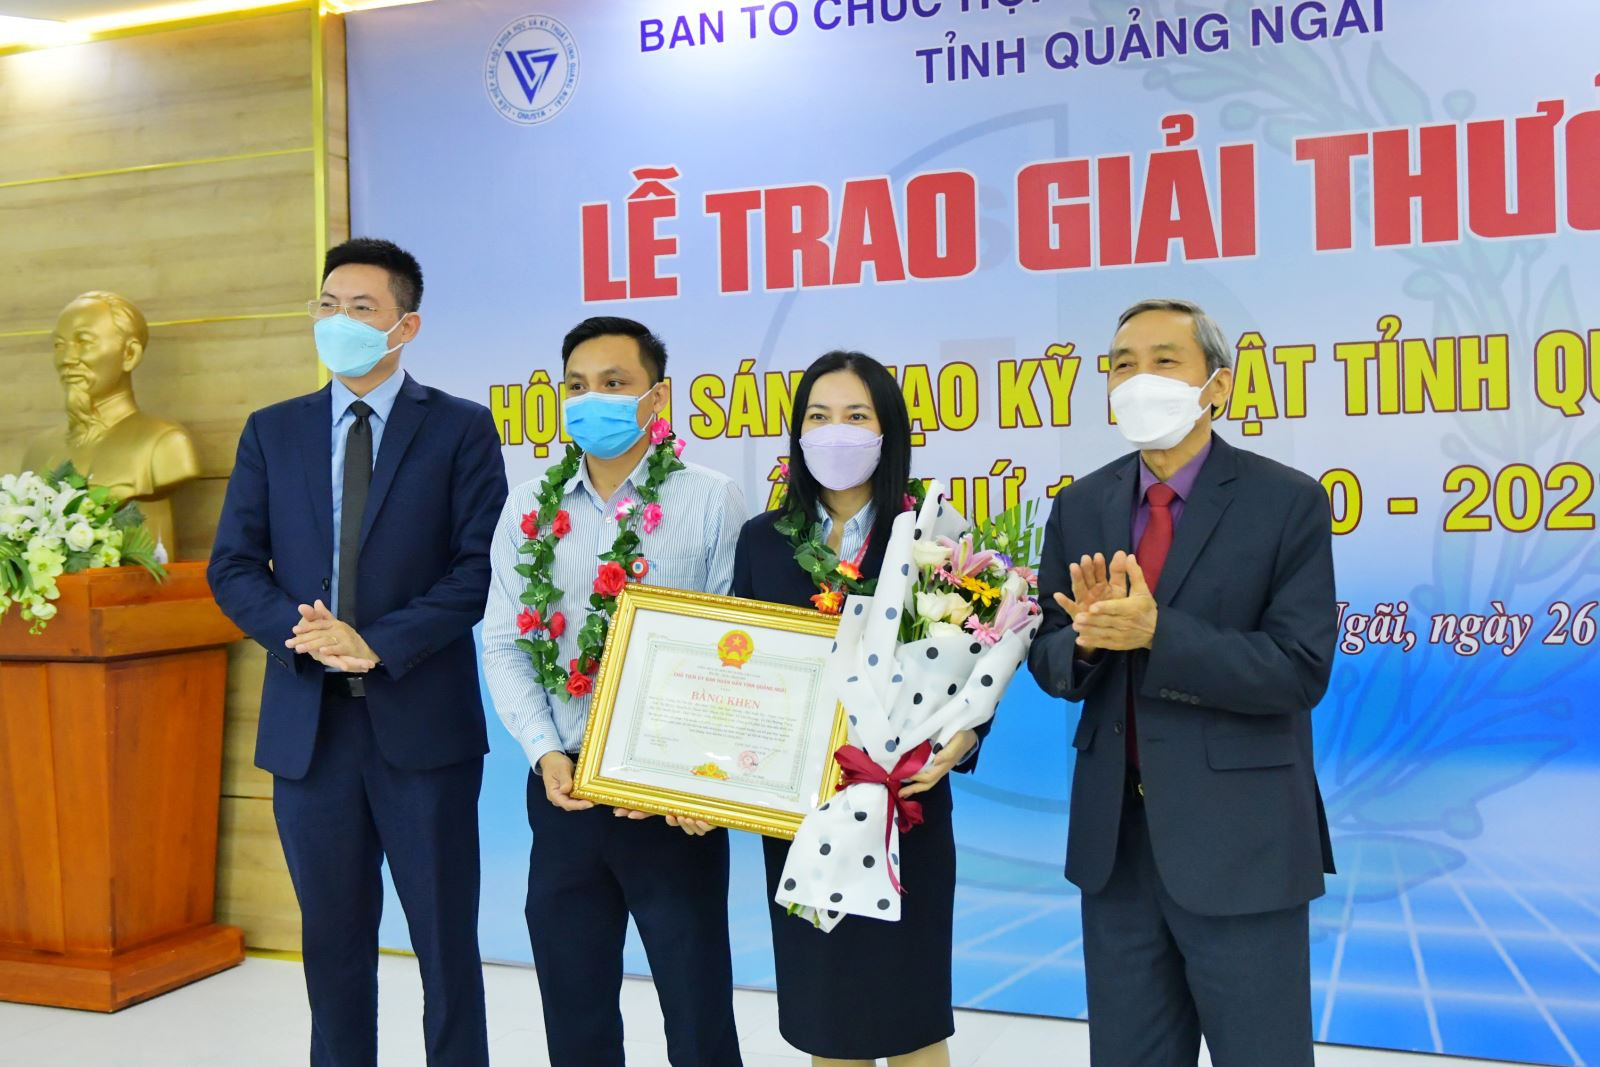 Ban tổ chức trao giải Ba cho đại diện nhóm tác giả đạt giải.